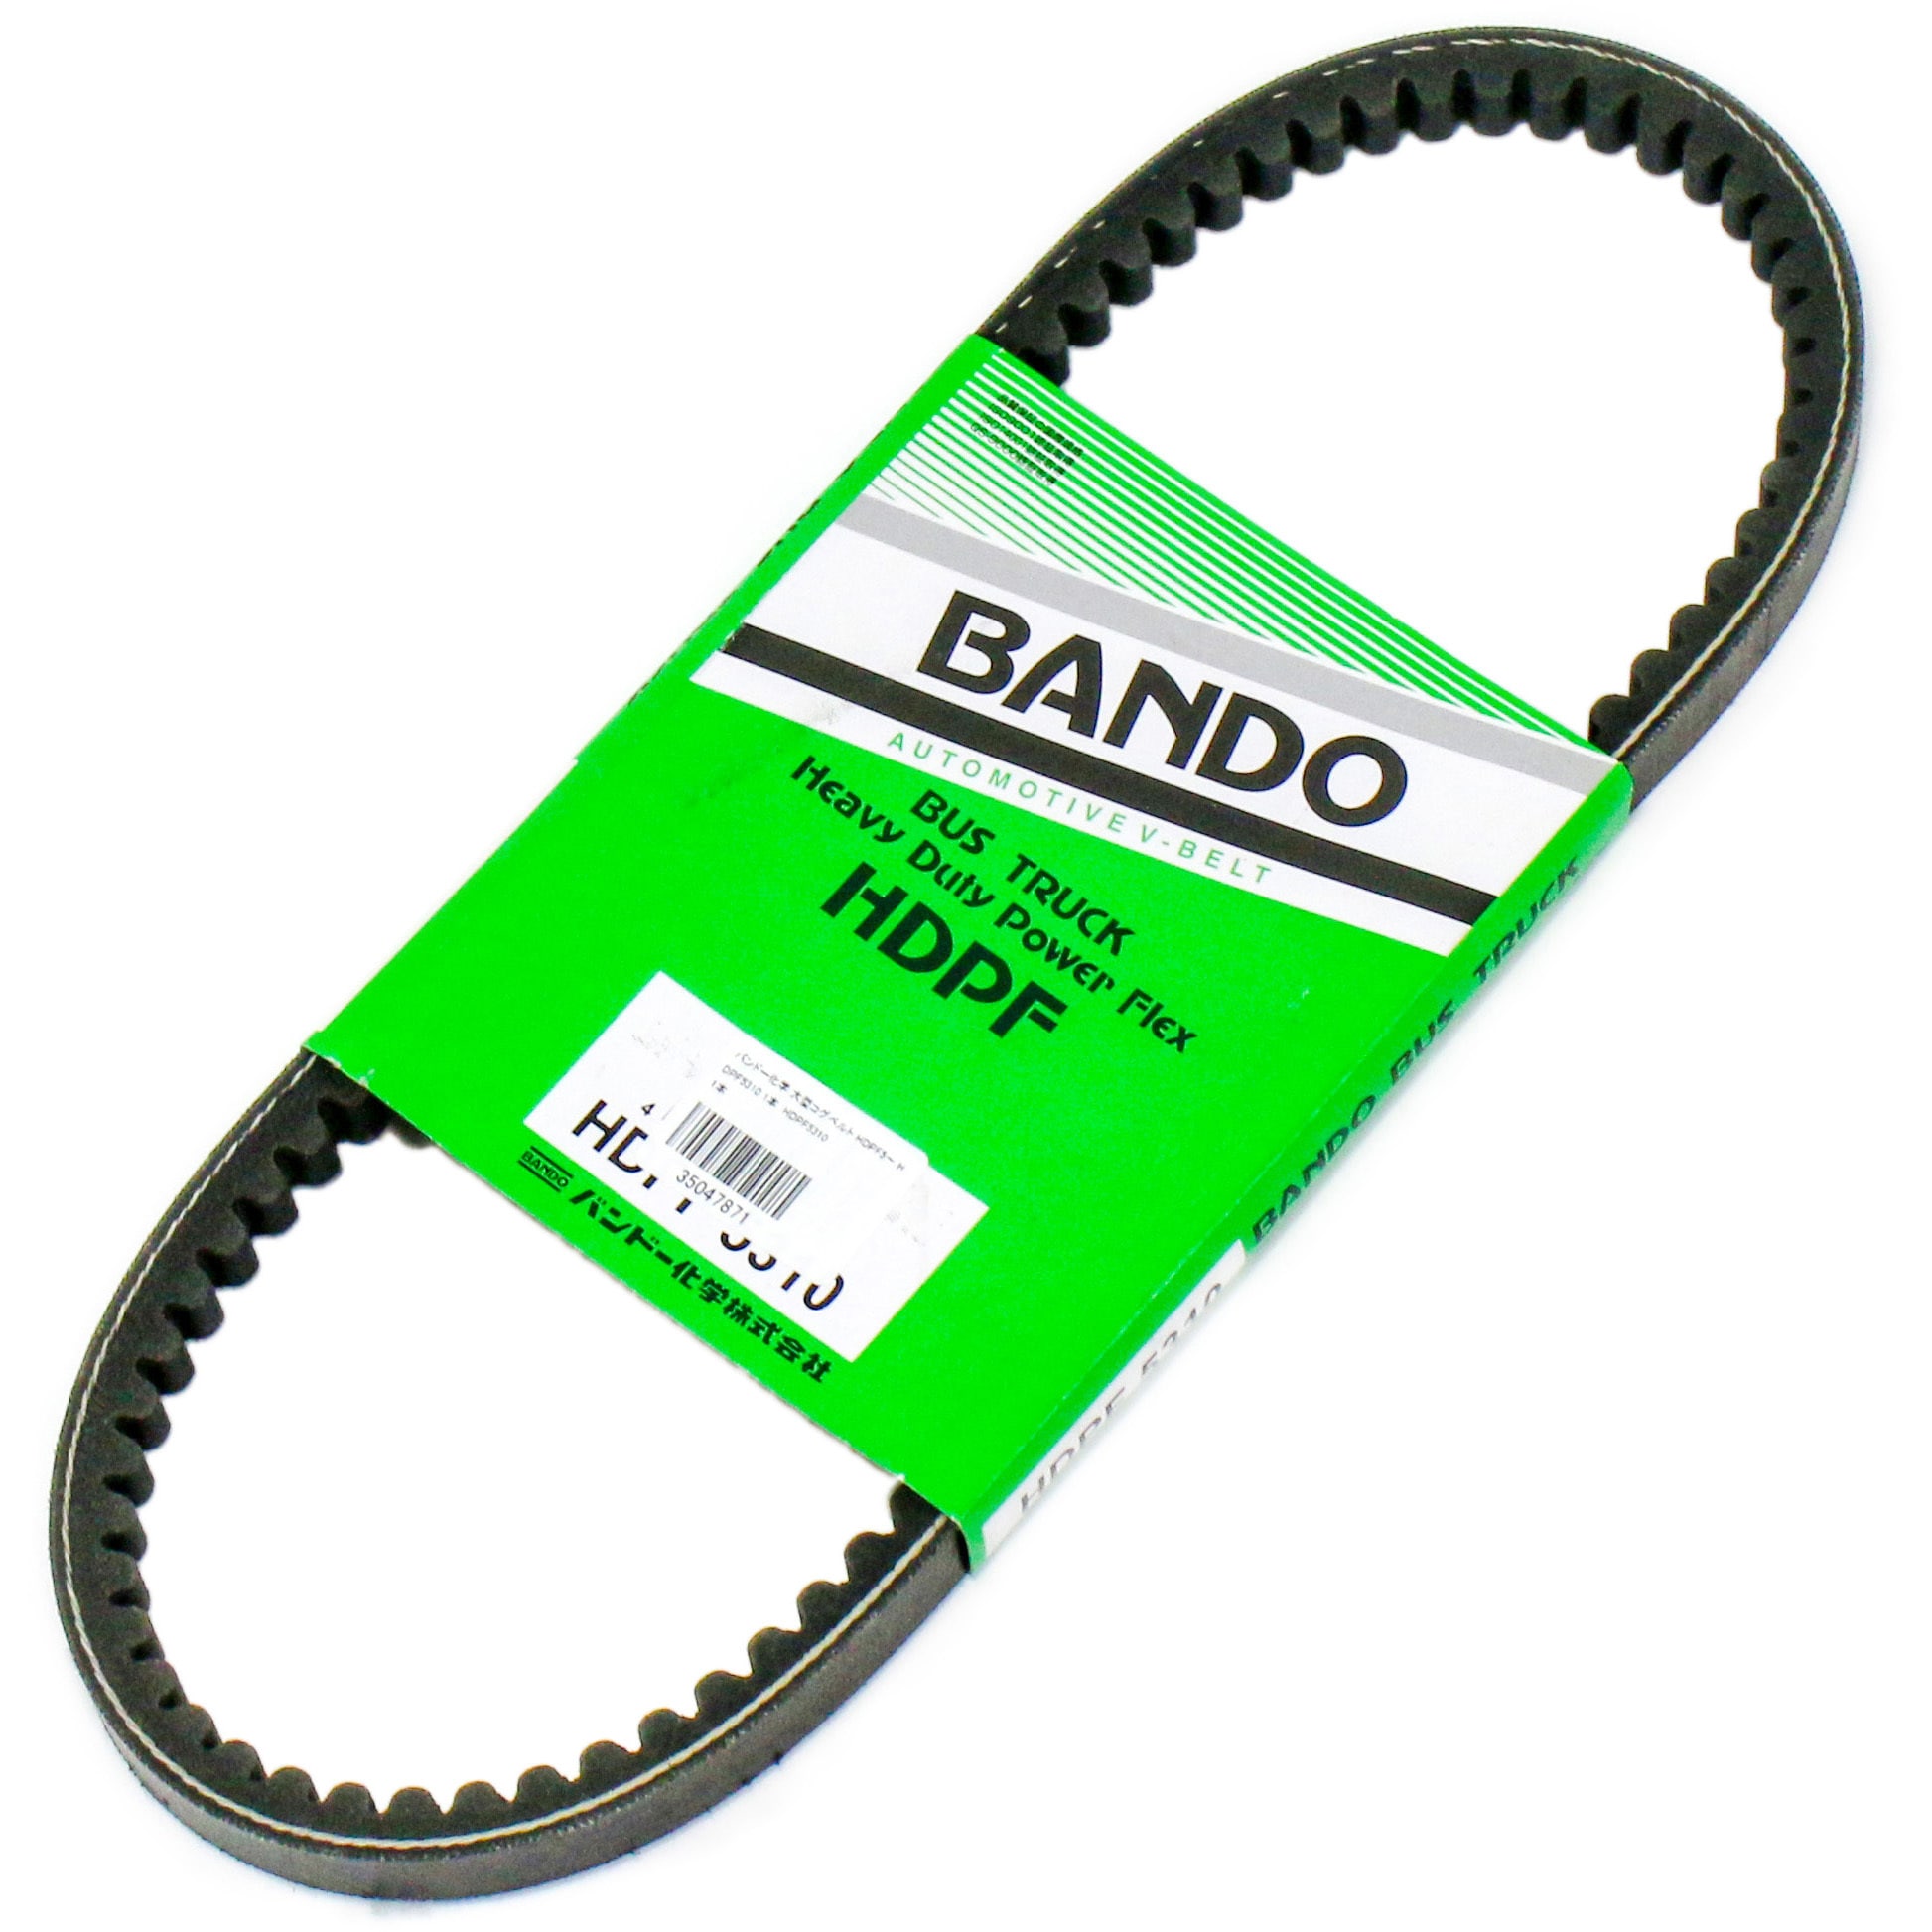 551円 特別セール品 BANDO バンドー ヘビーデューティーパワーフレックスベルト HDPF5635